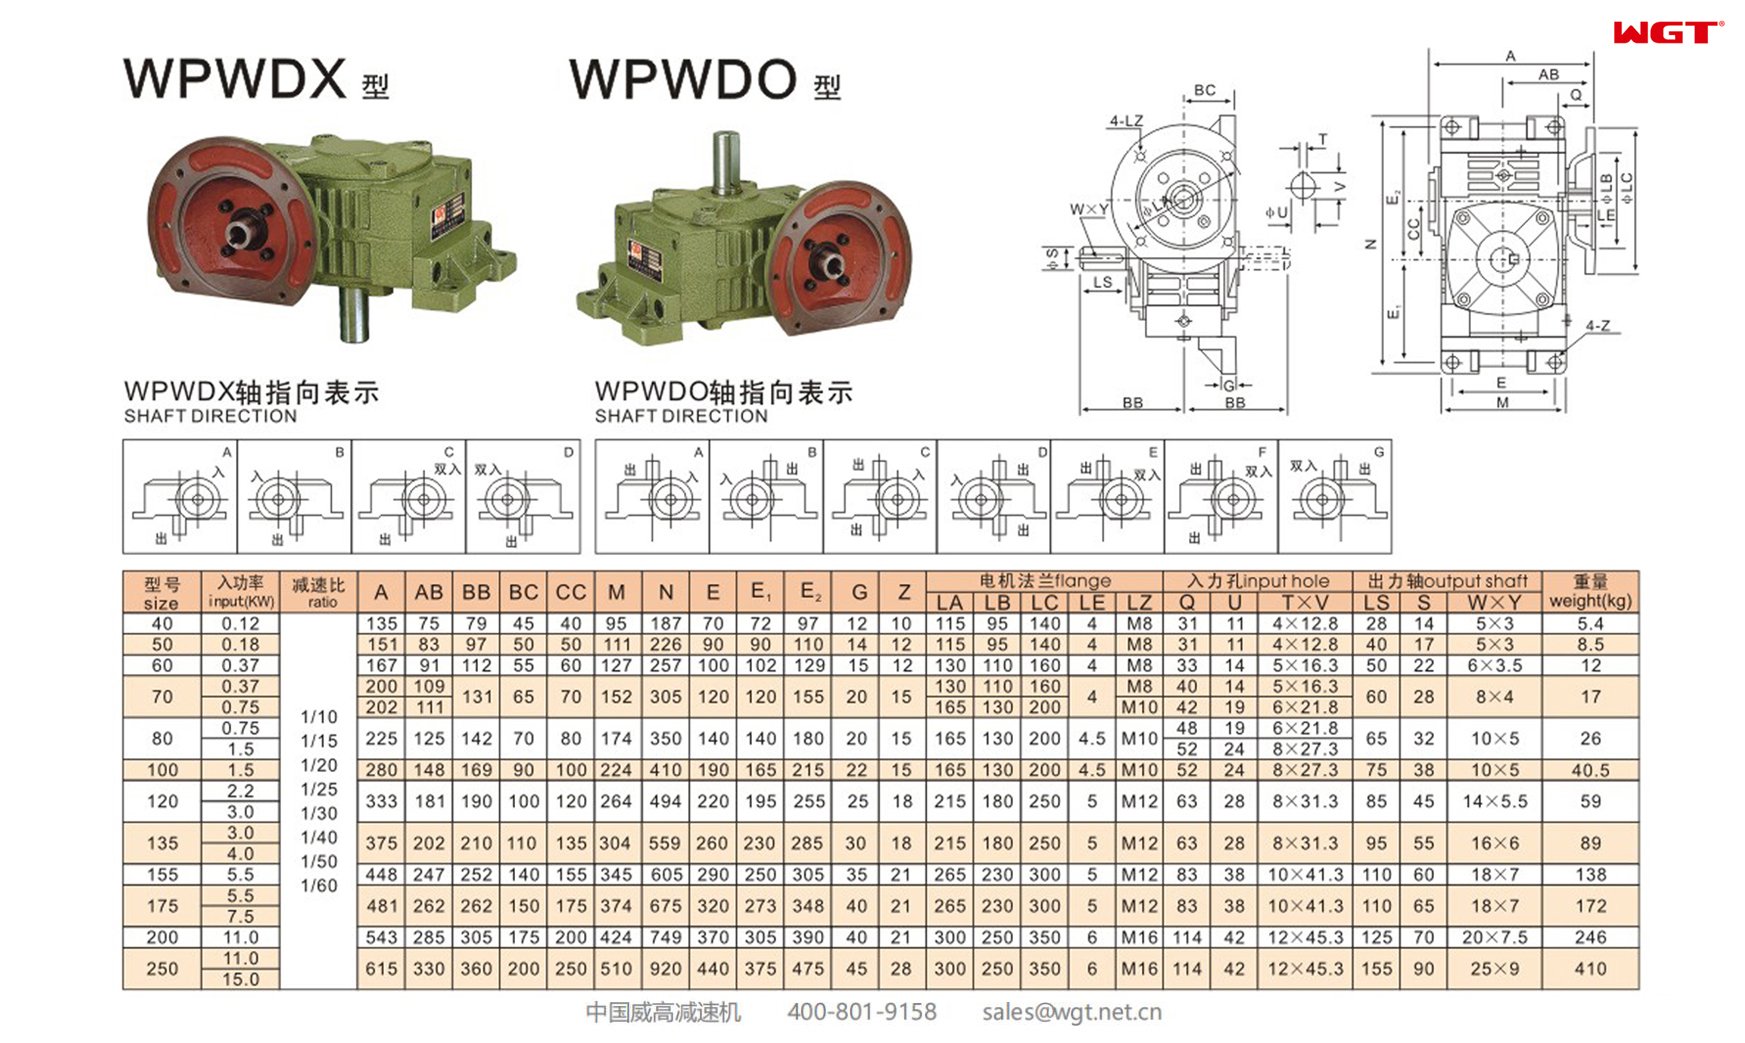 WPWDX WPWDO100 蜗轮减速机 万向减速机